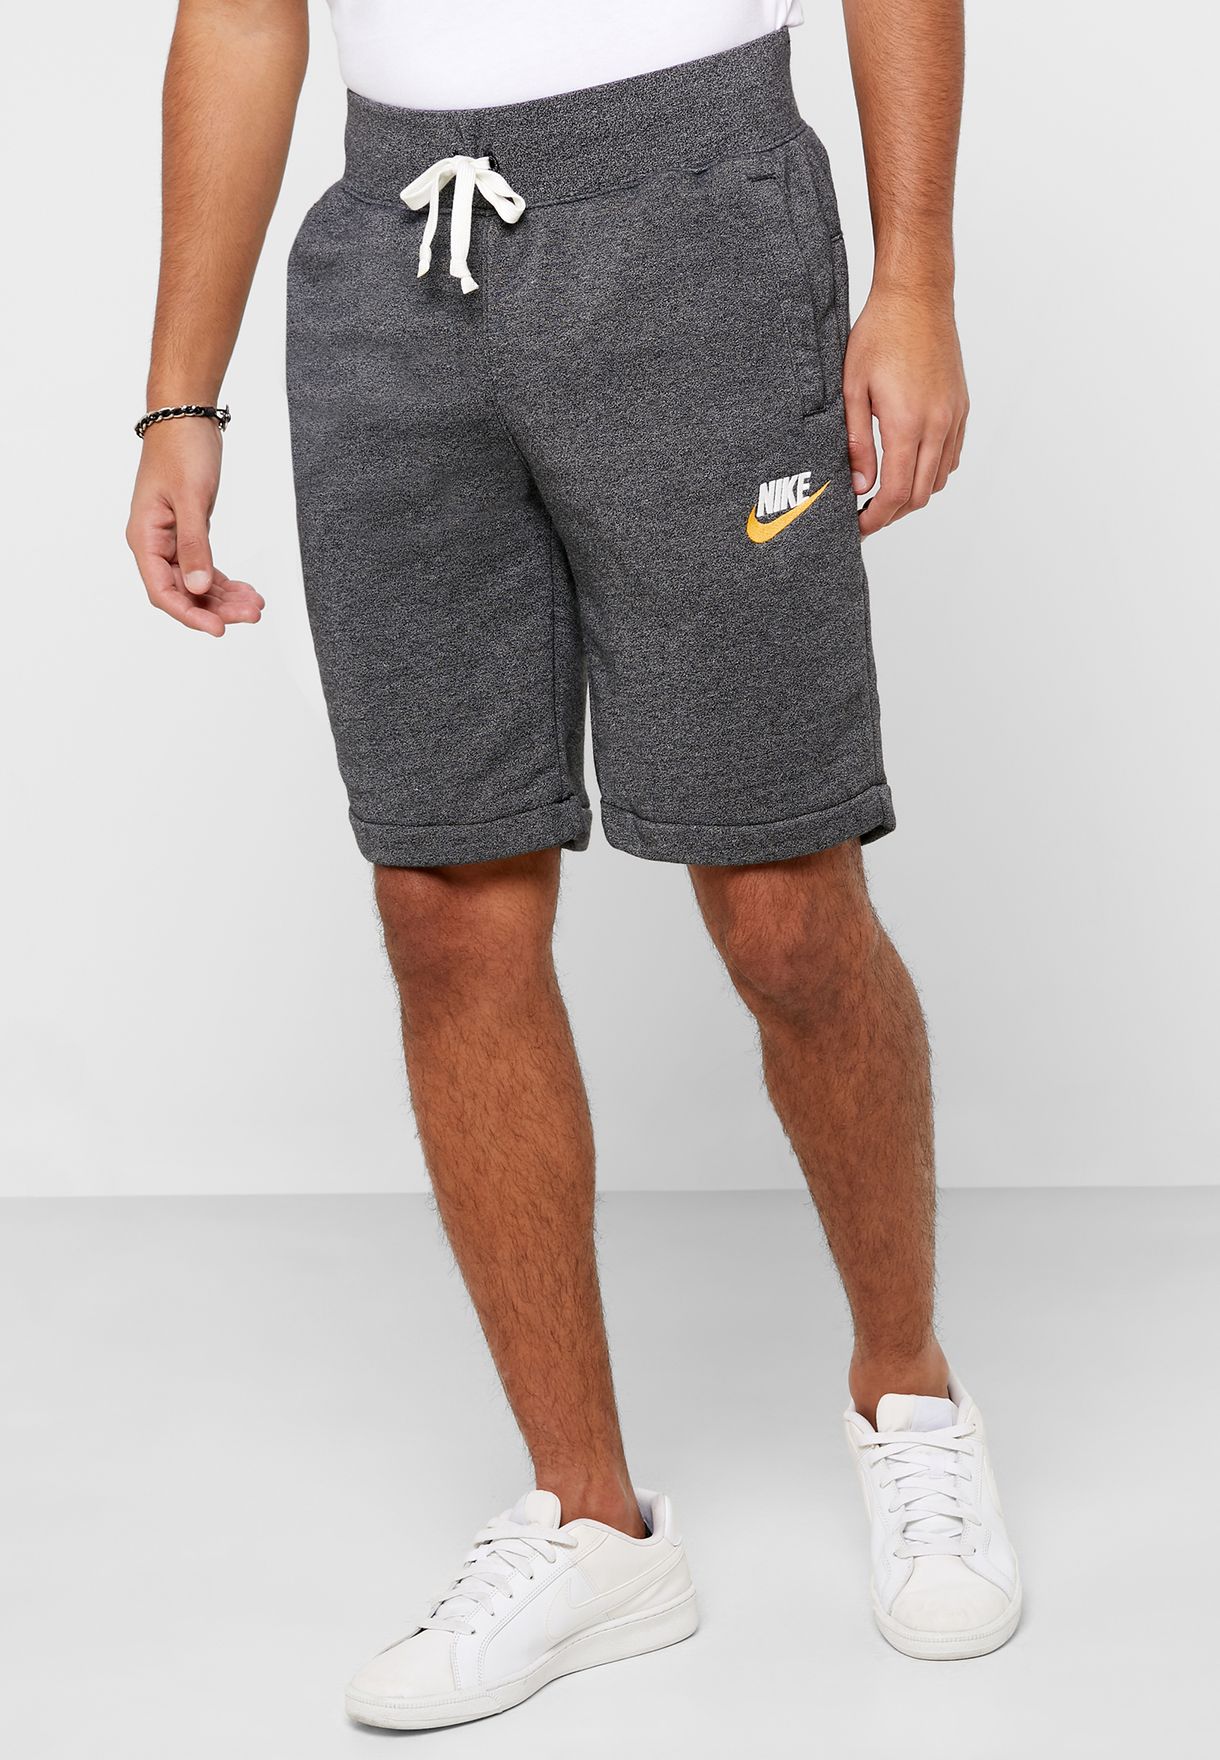 nike heritage shorts grey